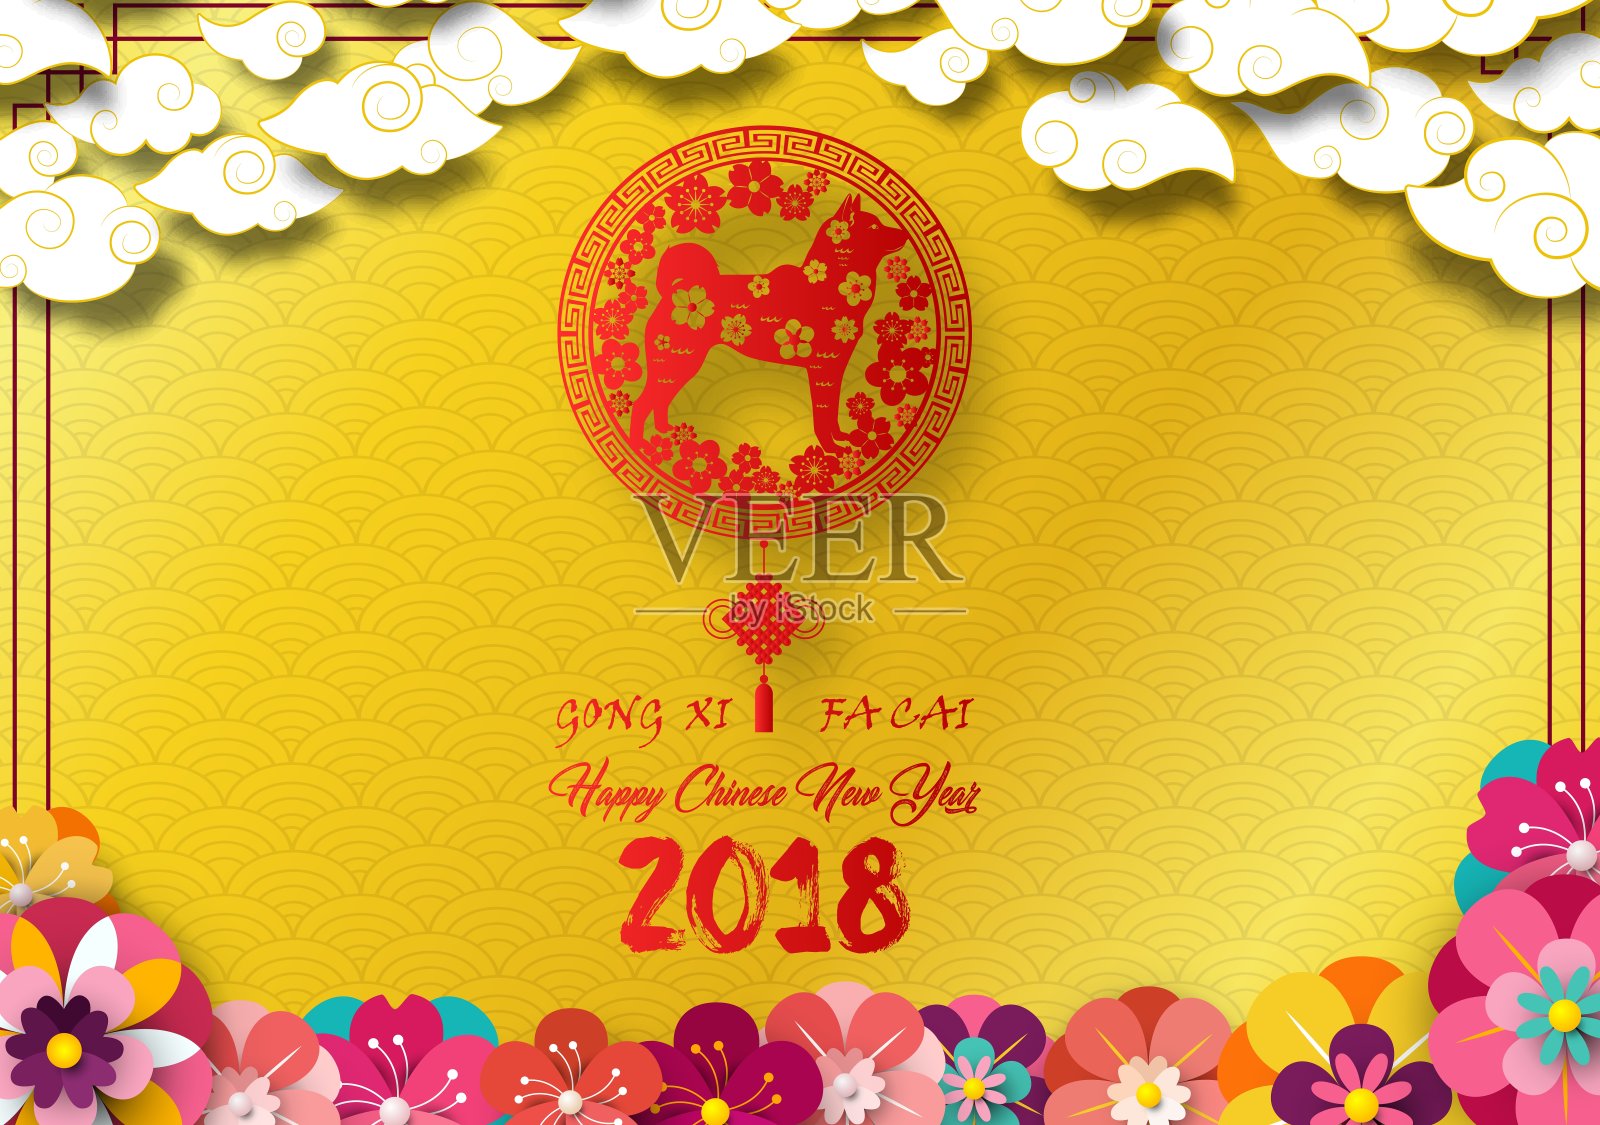 2018年中国新年贺卡，红色狗在框架和盛开的花朵在金色图案背景设计模板素材